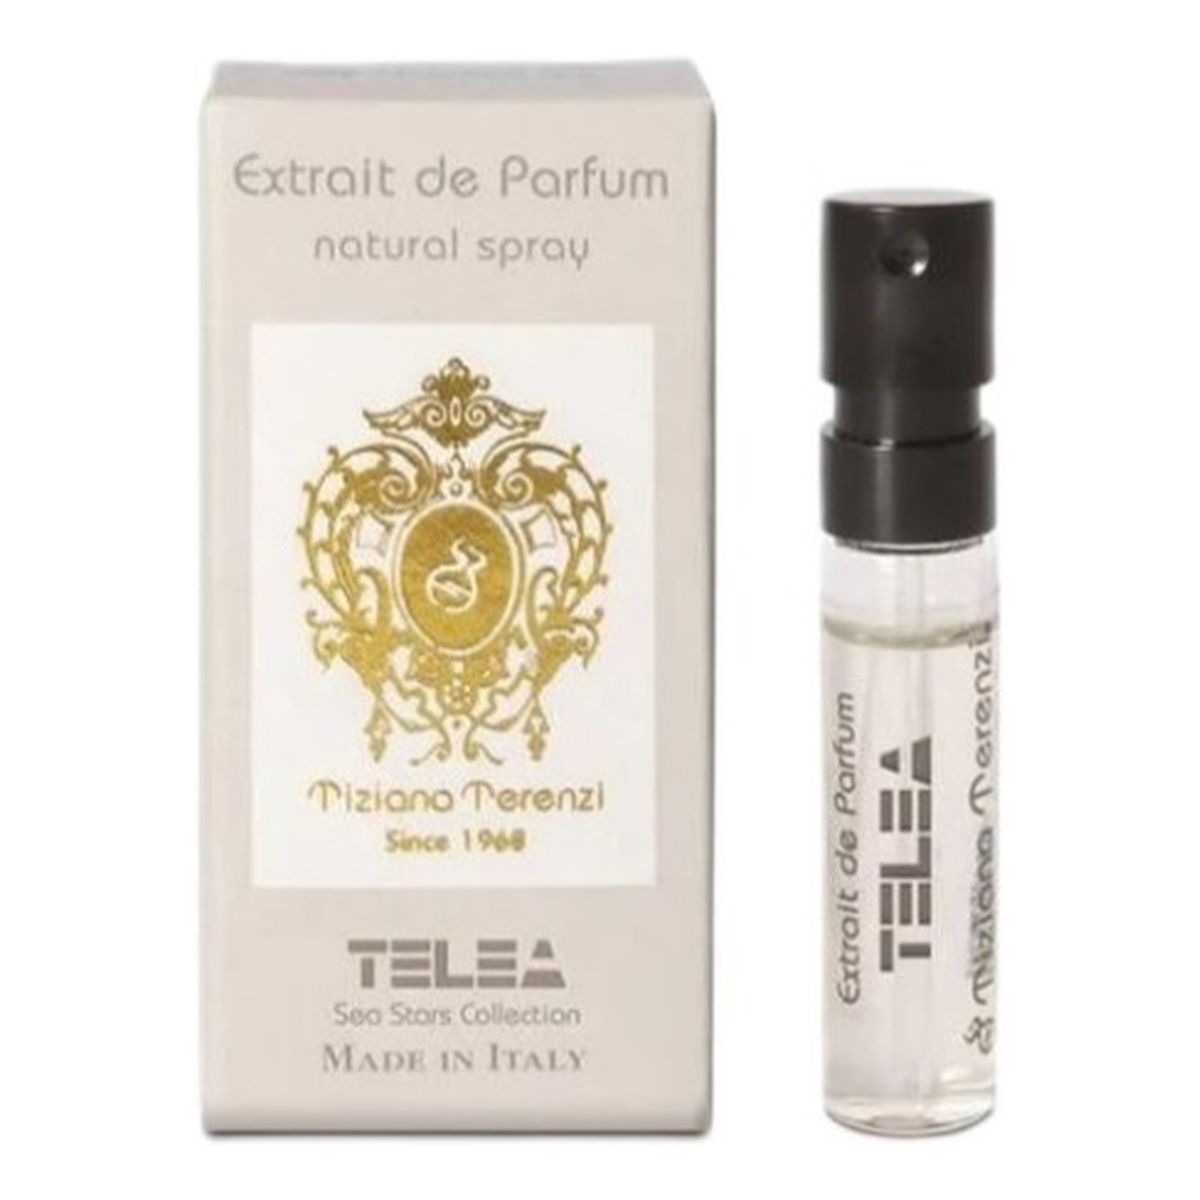 Tiziana Terenzi Telea ekstrakt perfum spray próbka 1.5ml